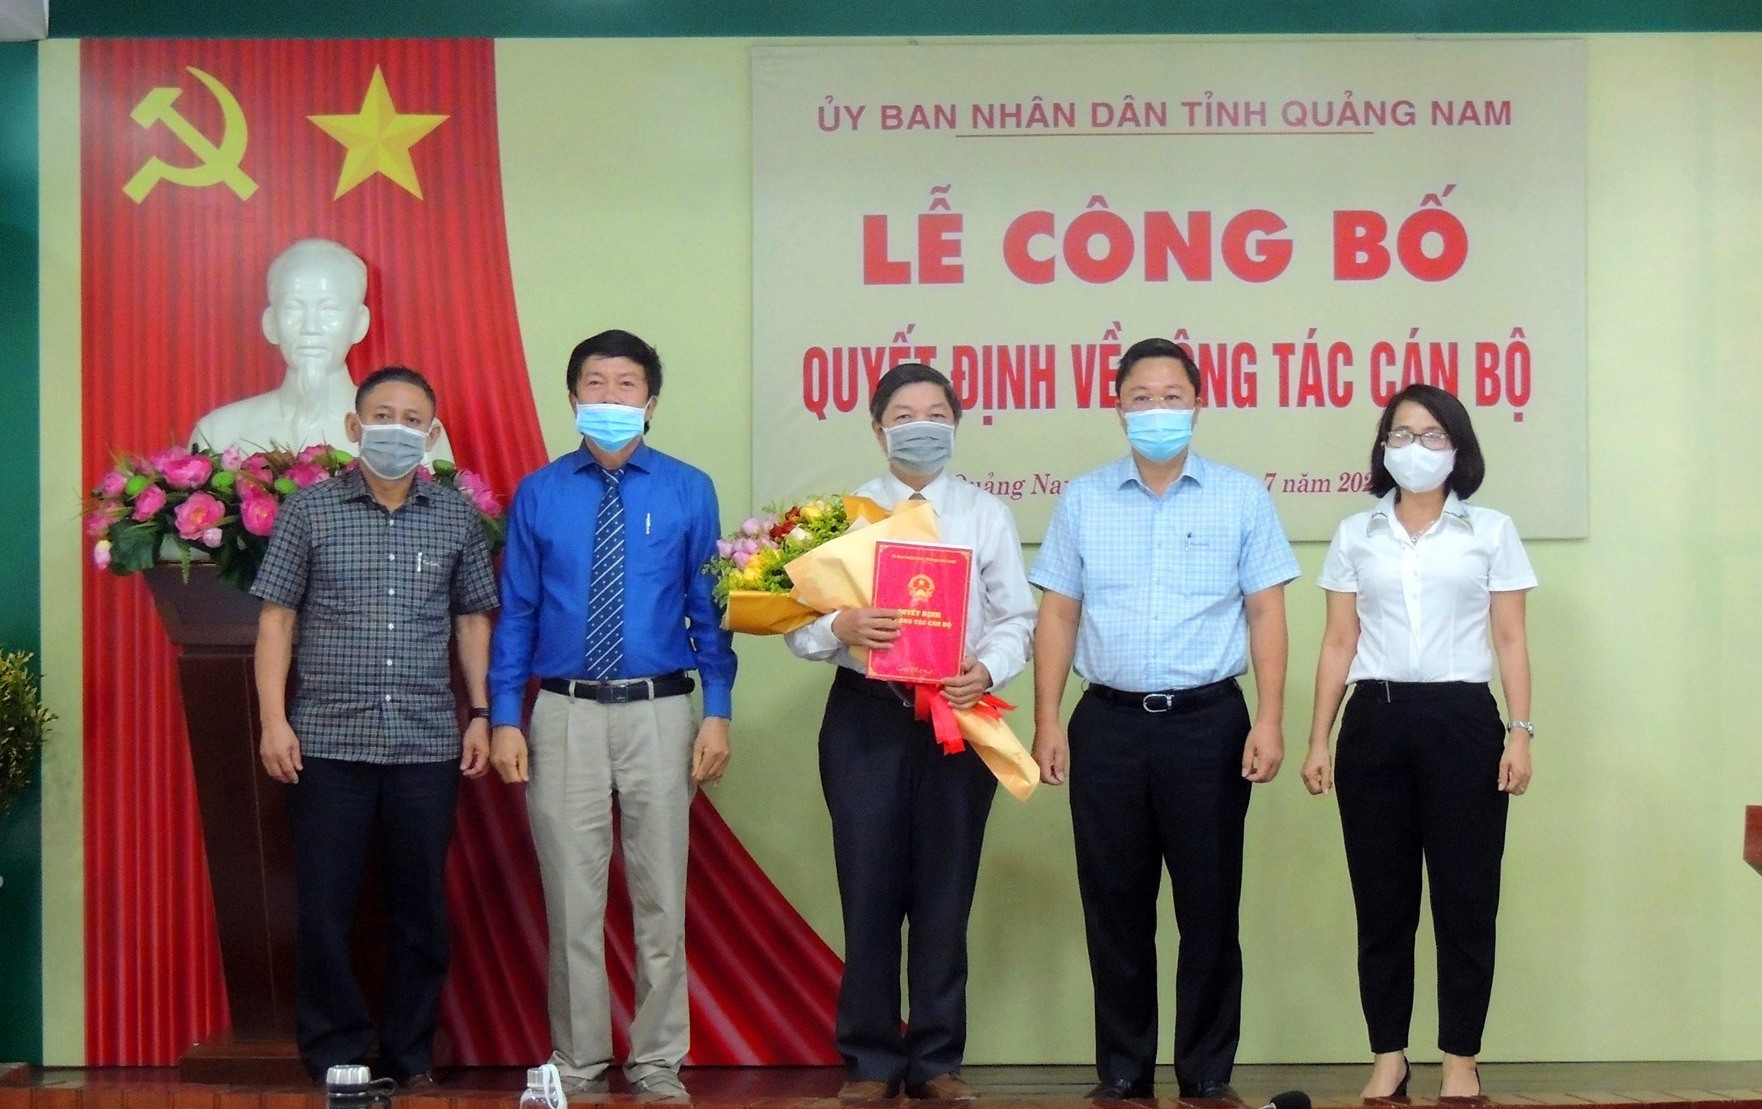 Ông Hường Văn Minh (ôm hoa, đúng giữa) sẽ là Phó Giám đốc Sở Công Thương bắt đầu từ ngày 1.8.2021